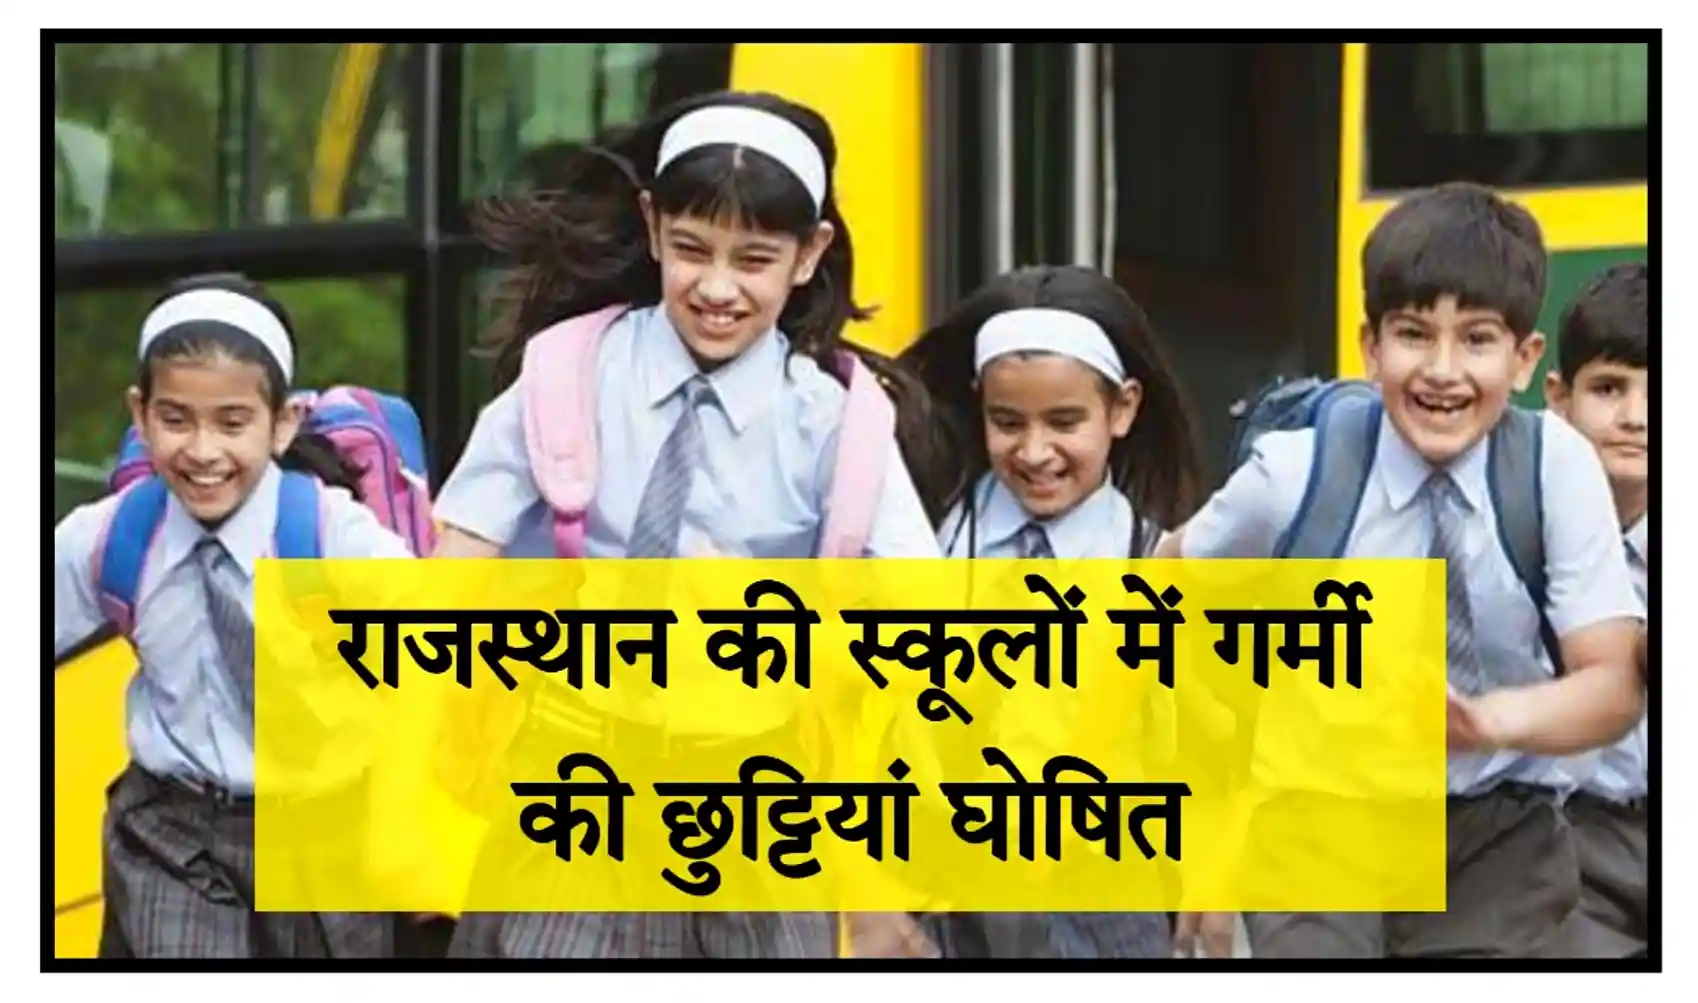 Rajasthan School Summer Vacation 2023 राजस्थान की सभी स्कूलों और कॉलेजों में गर्मियों की छुट्टियां घोषित, संपूर्ण जानकारी देखें